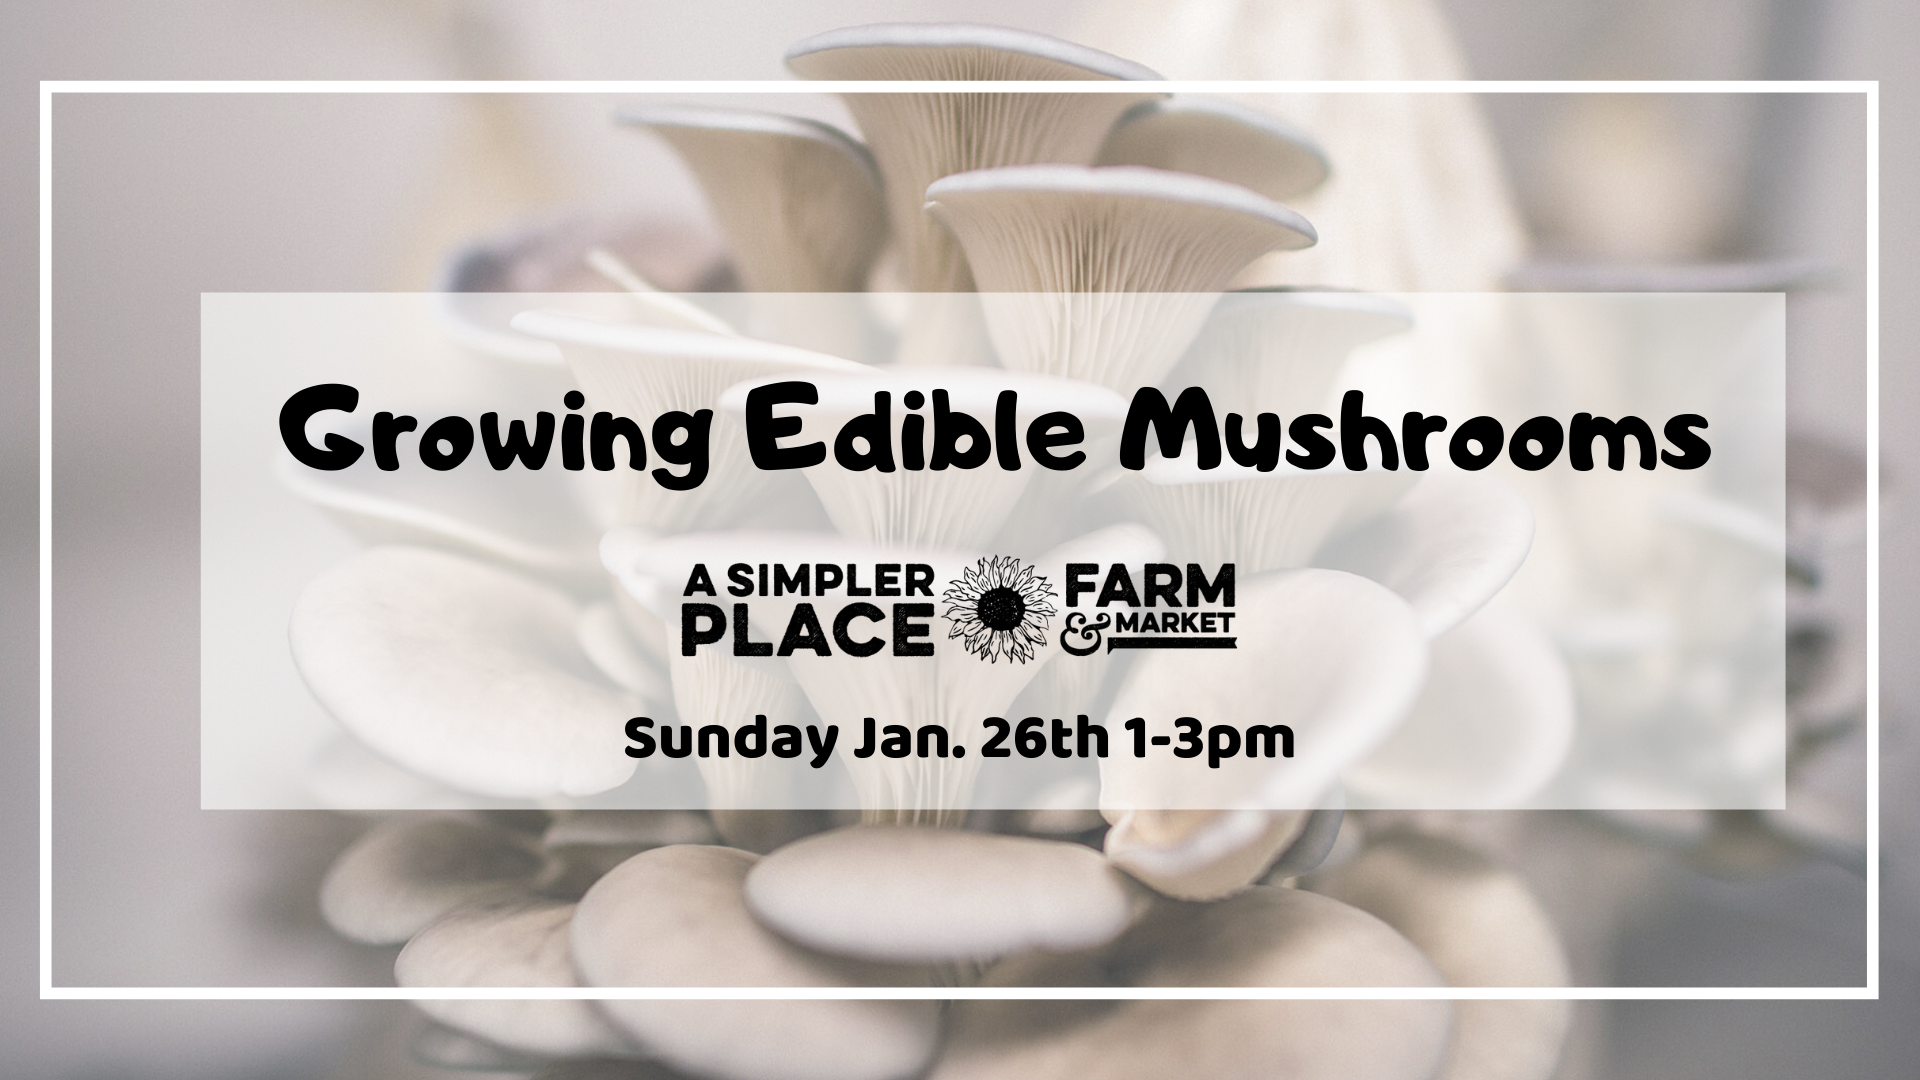 Growing Edible Mushrooms